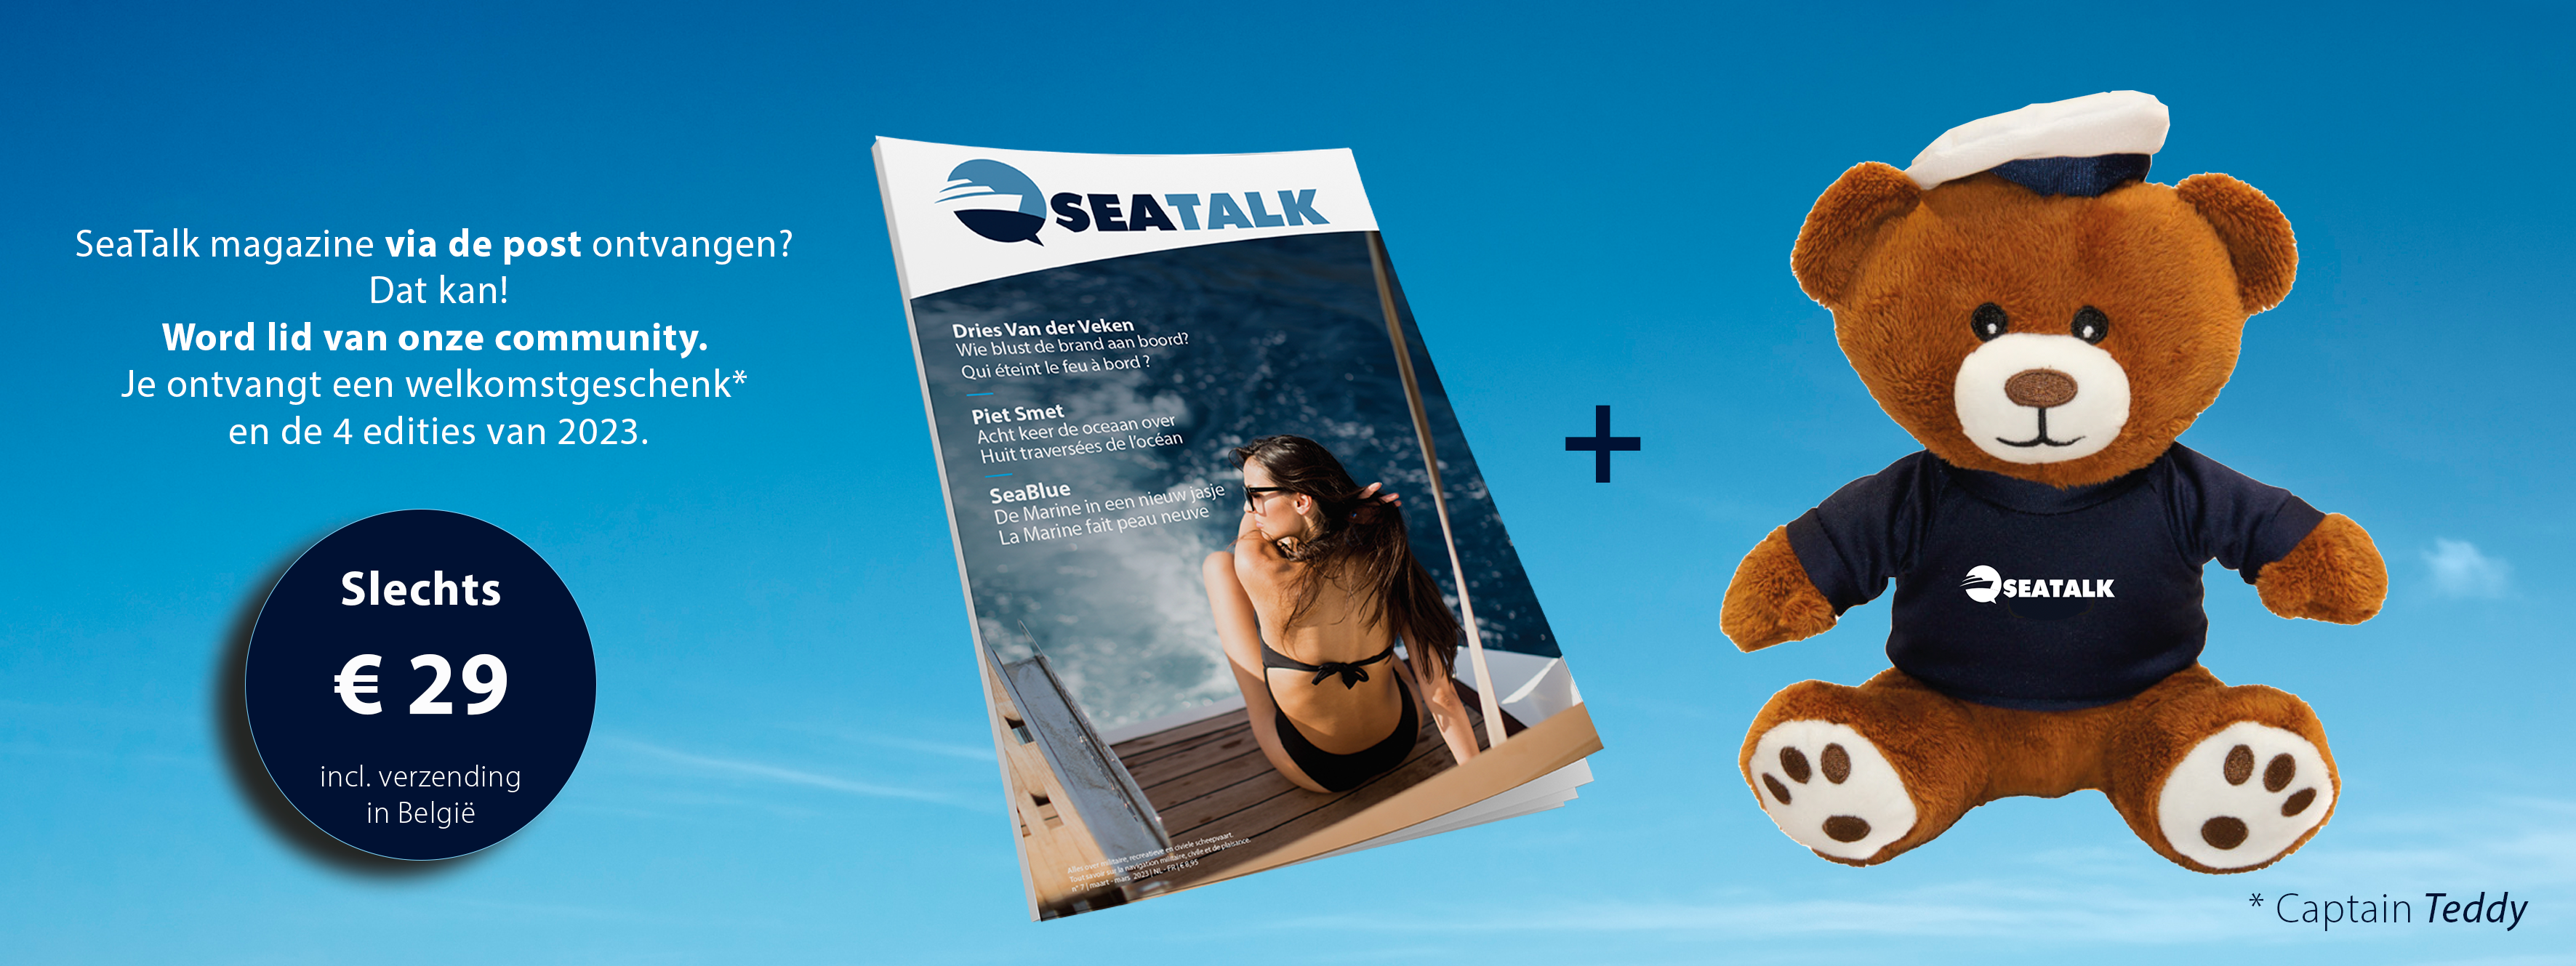 SeaTalk is een Belgisch tijdschrift over de maritieme wereld.